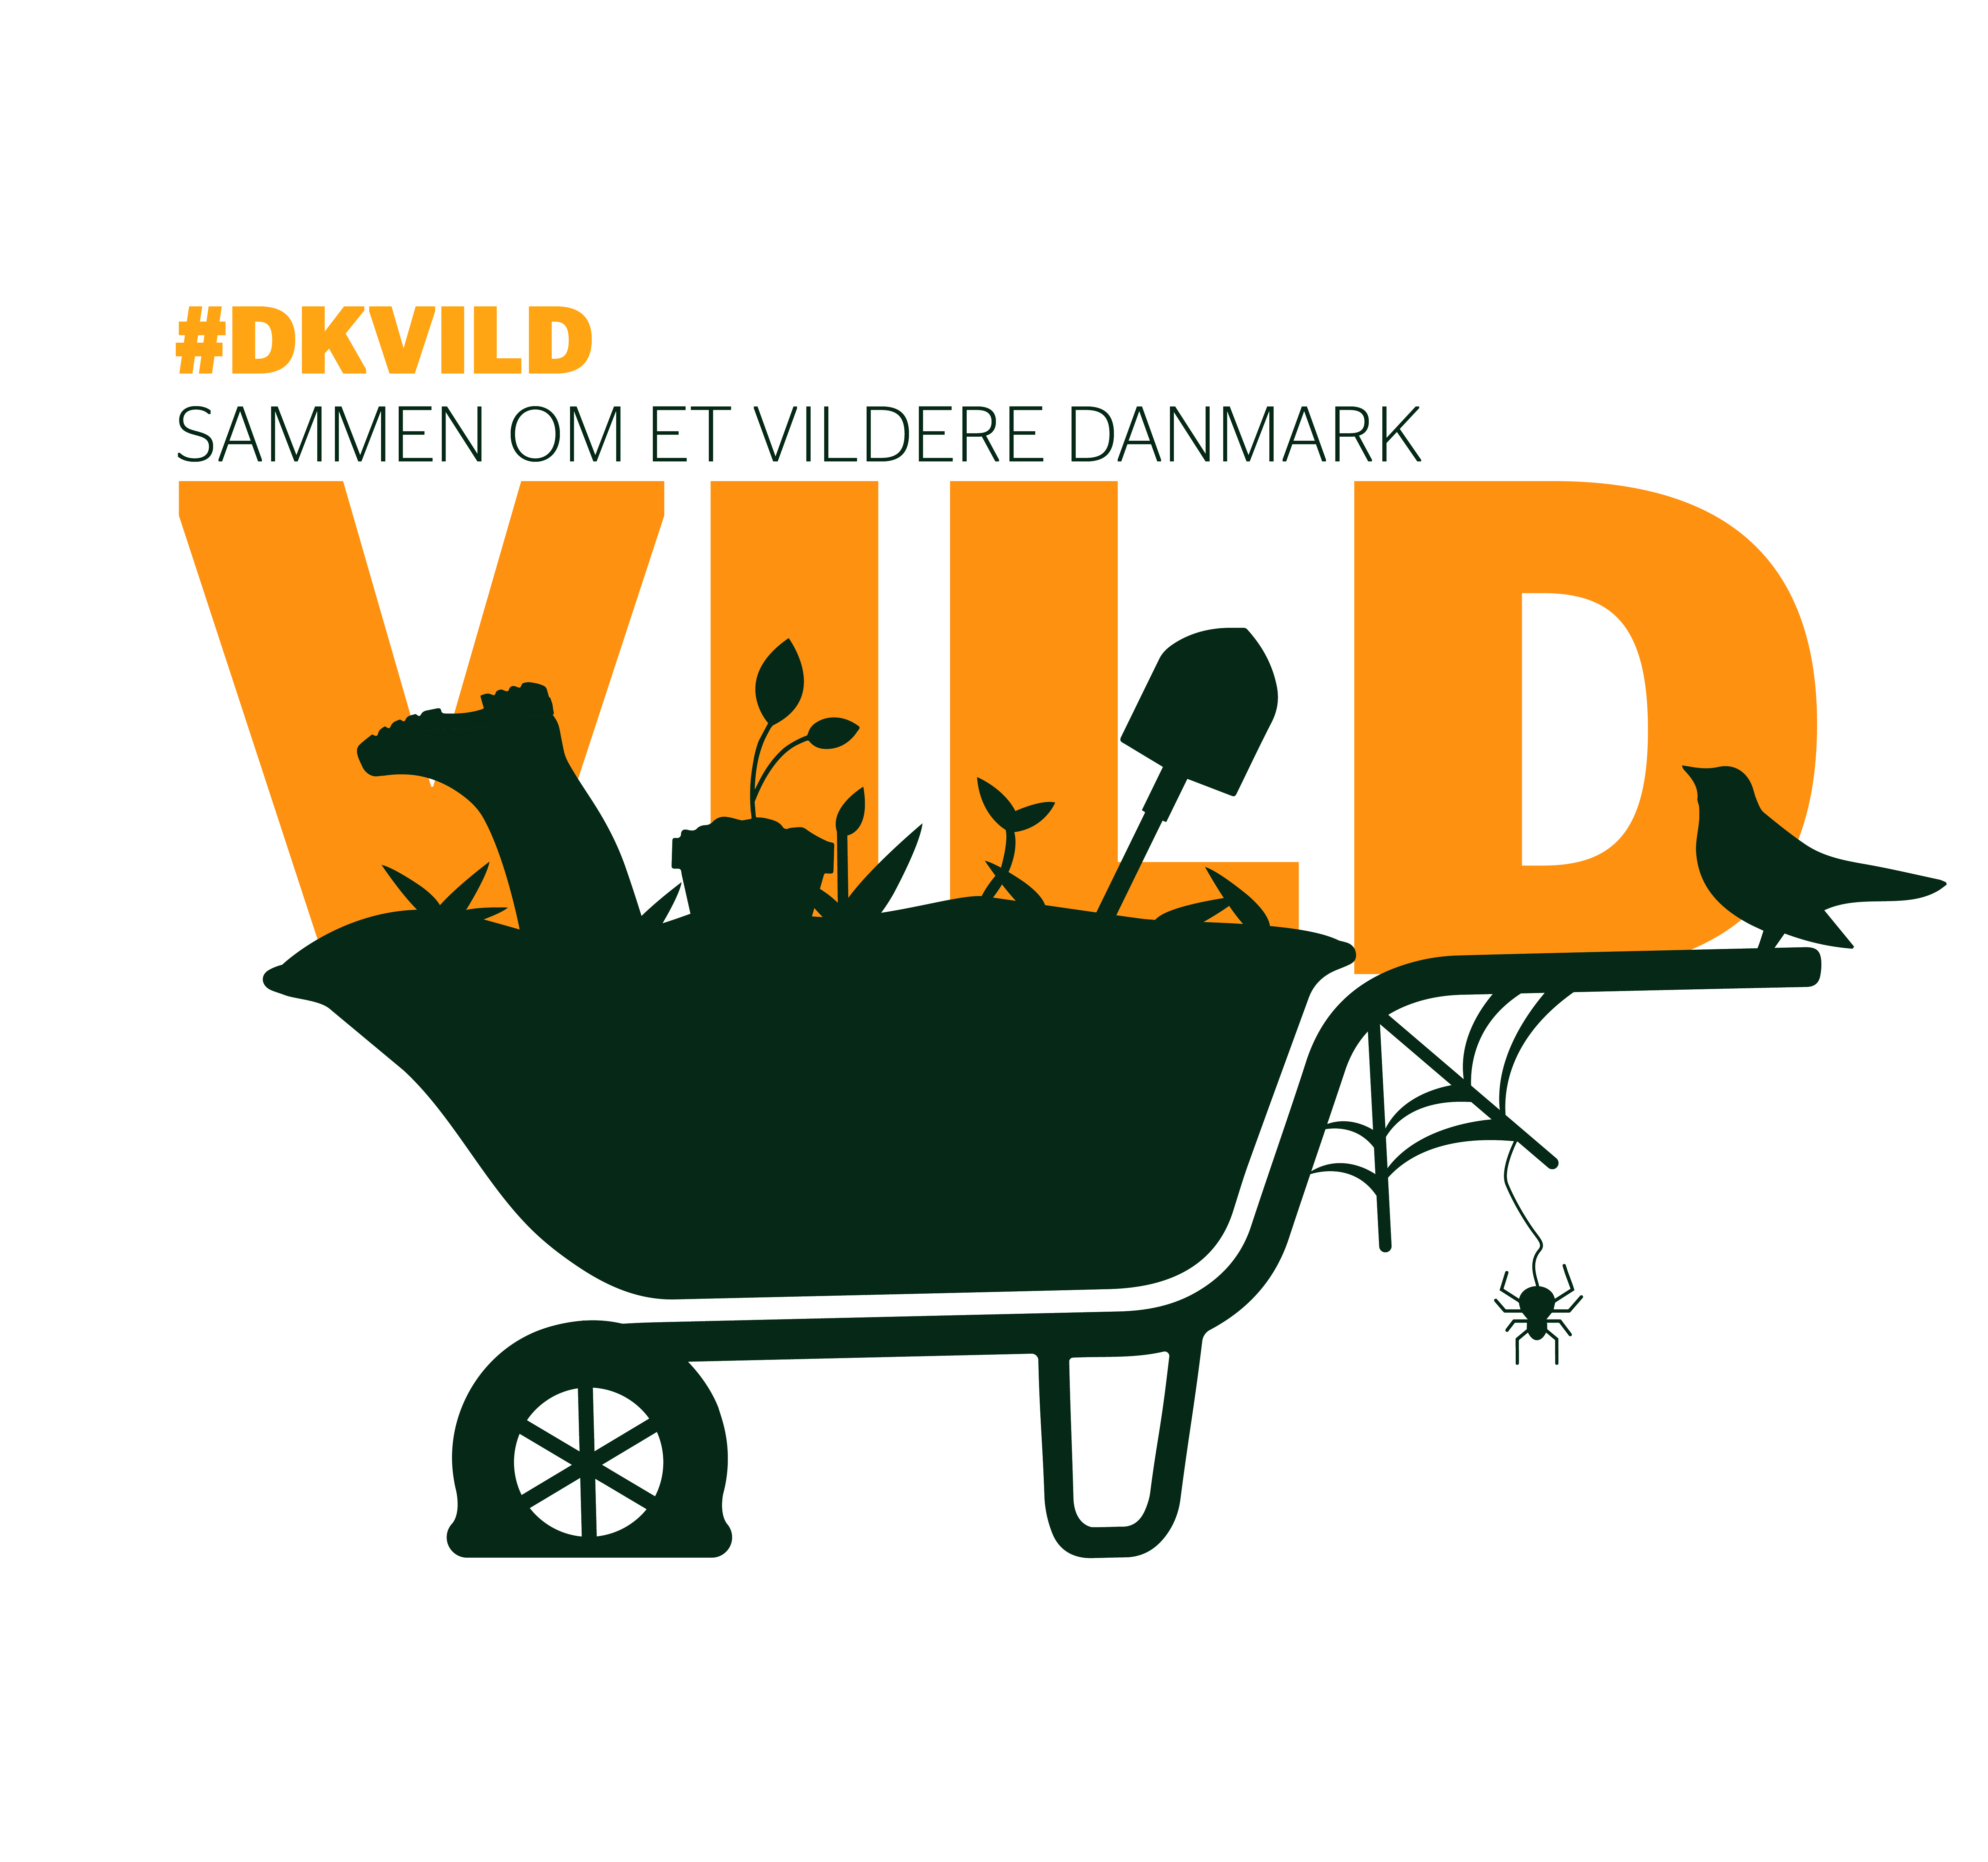 Logo for Miljøministeriets kampagne 'Sammen om et VILDERE Danmark'